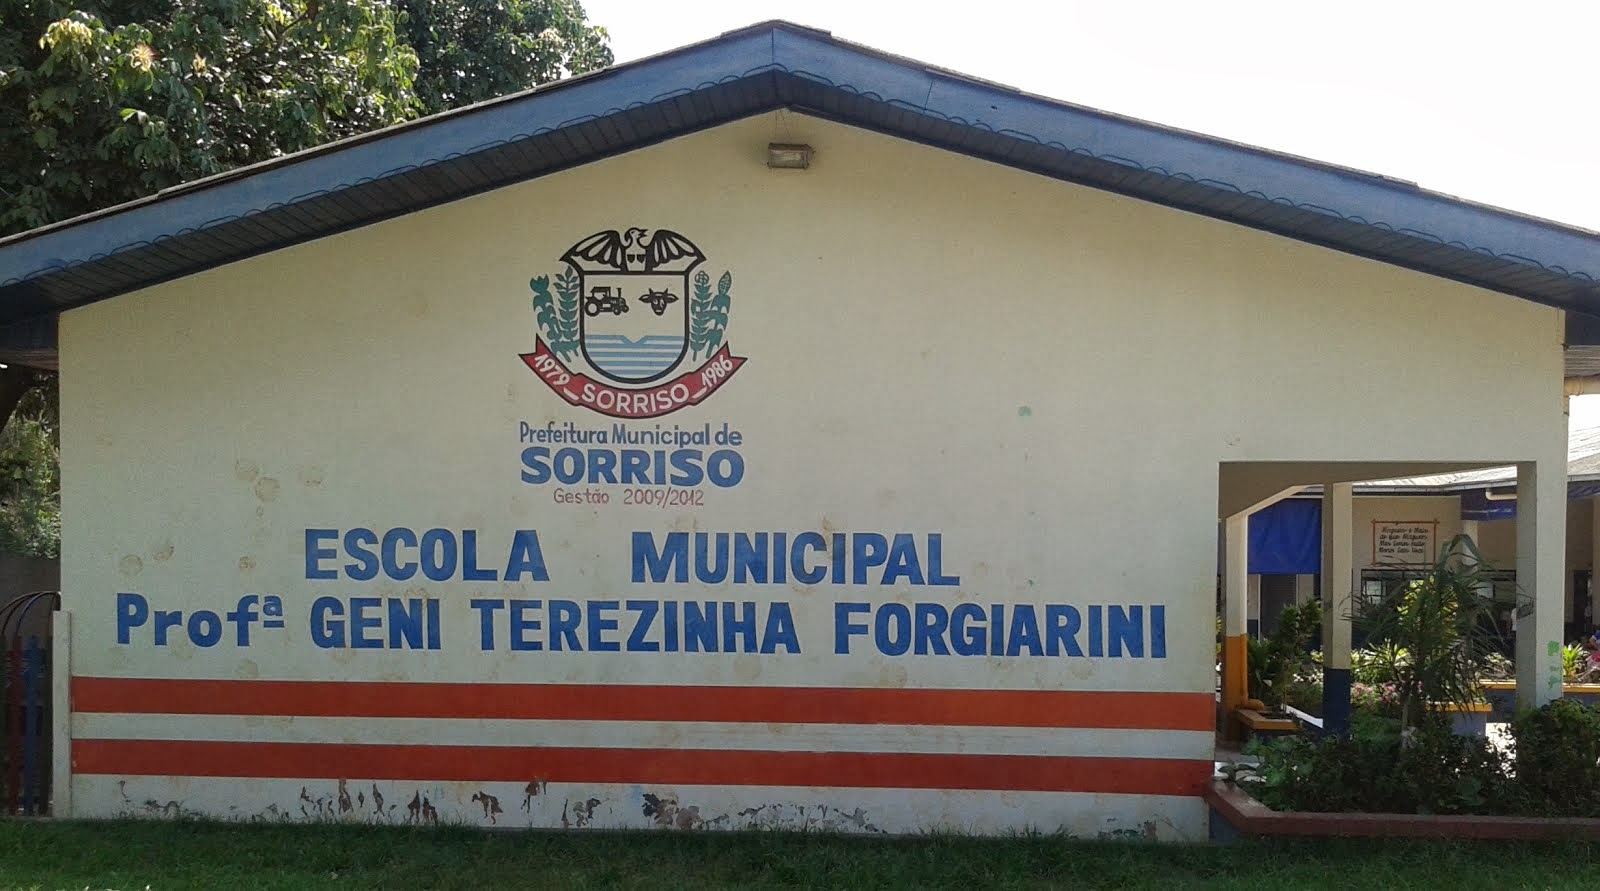 Escola Municipal Profª Geni Terezinha Forgiarini